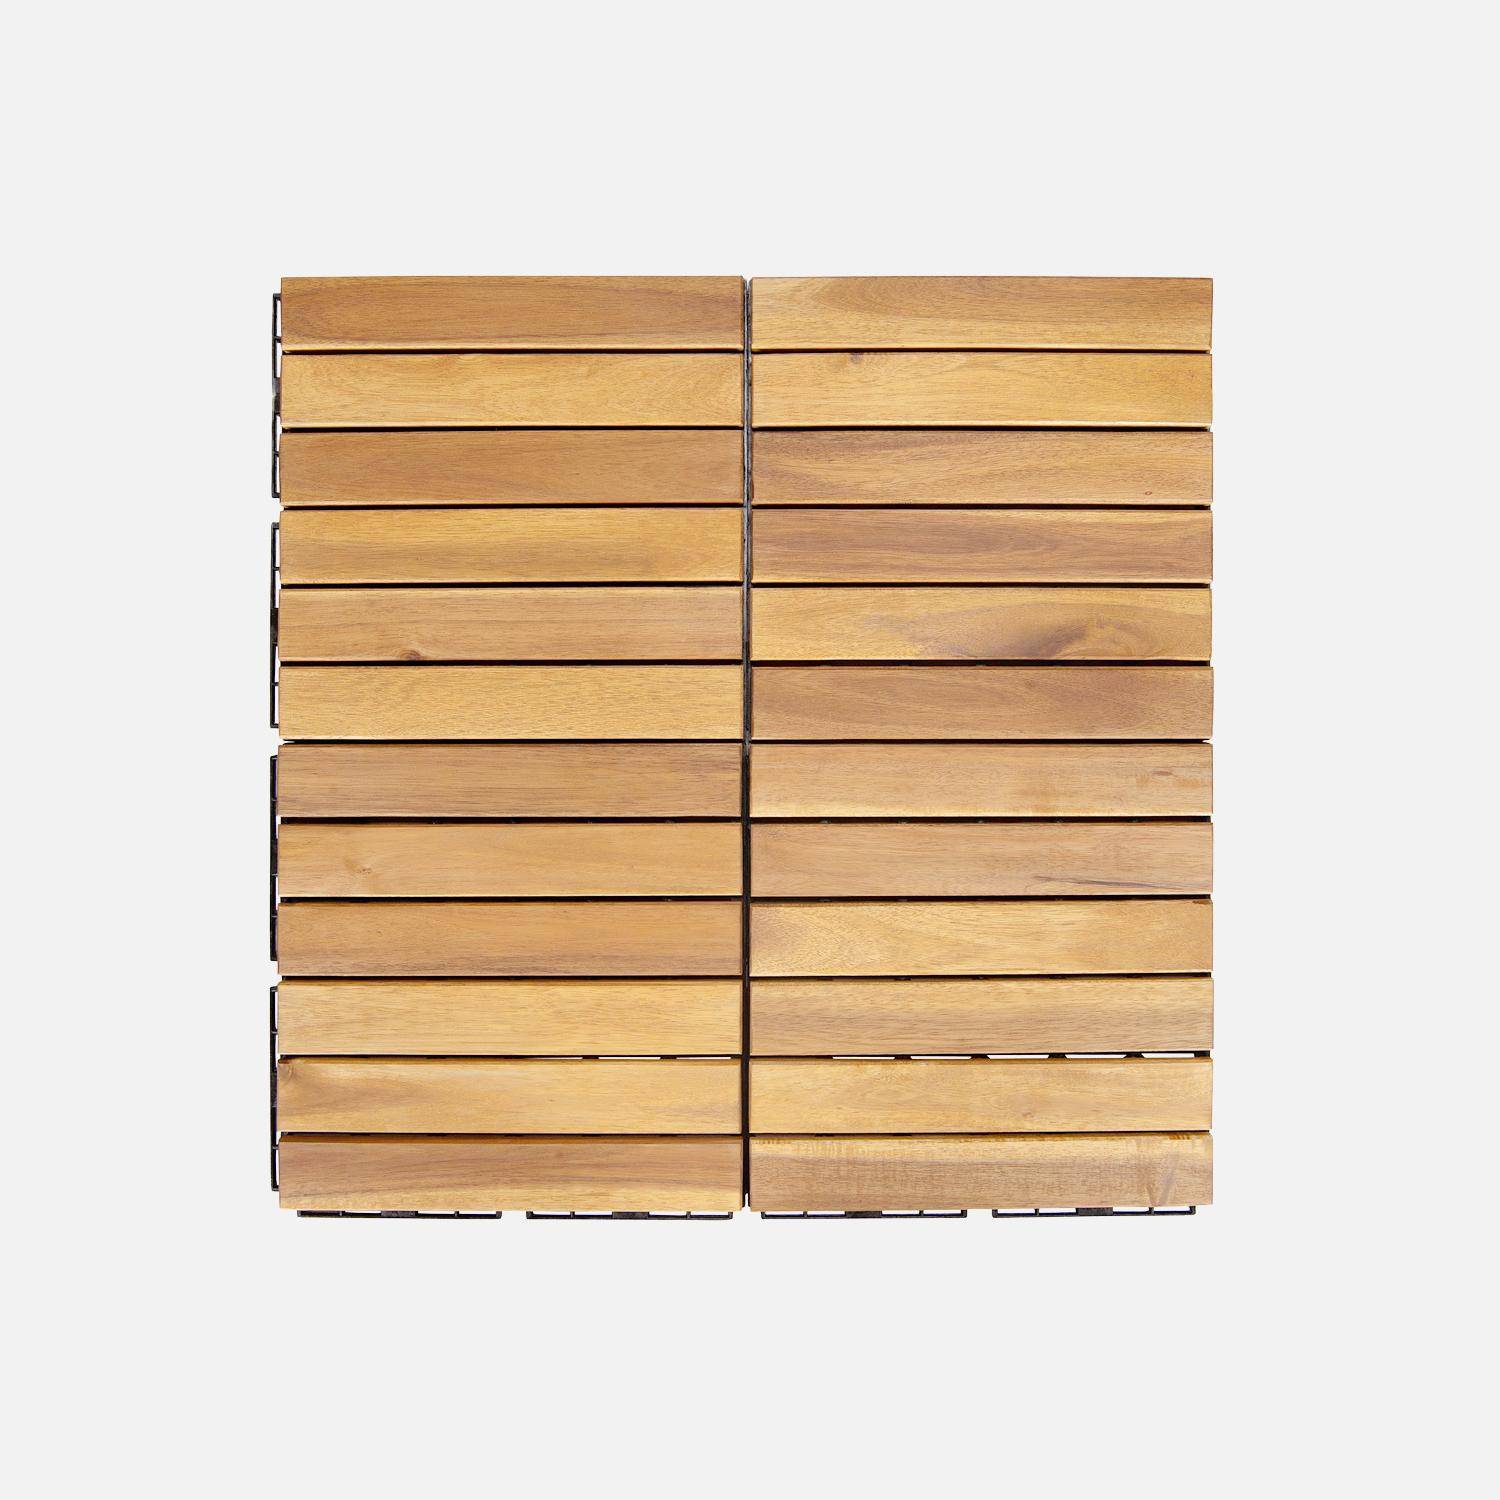 Lote de 36 ladrilhos para decks de madeira de acácia 30x30cm, padrão linear, ripado, de encaixe,sweeek,Photo4